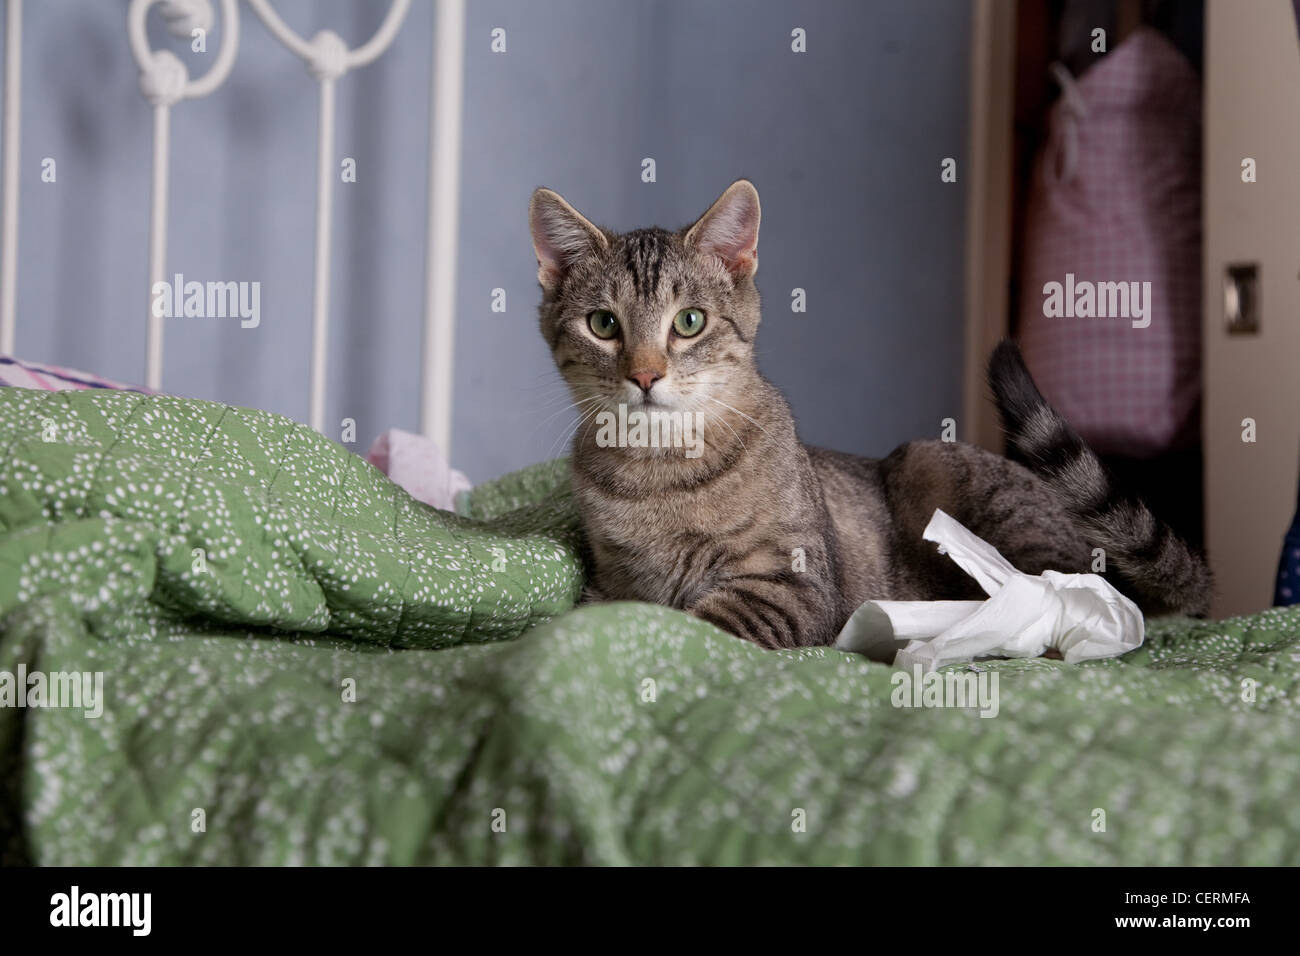 Alert Katze auf einem Bett. Stockfoto